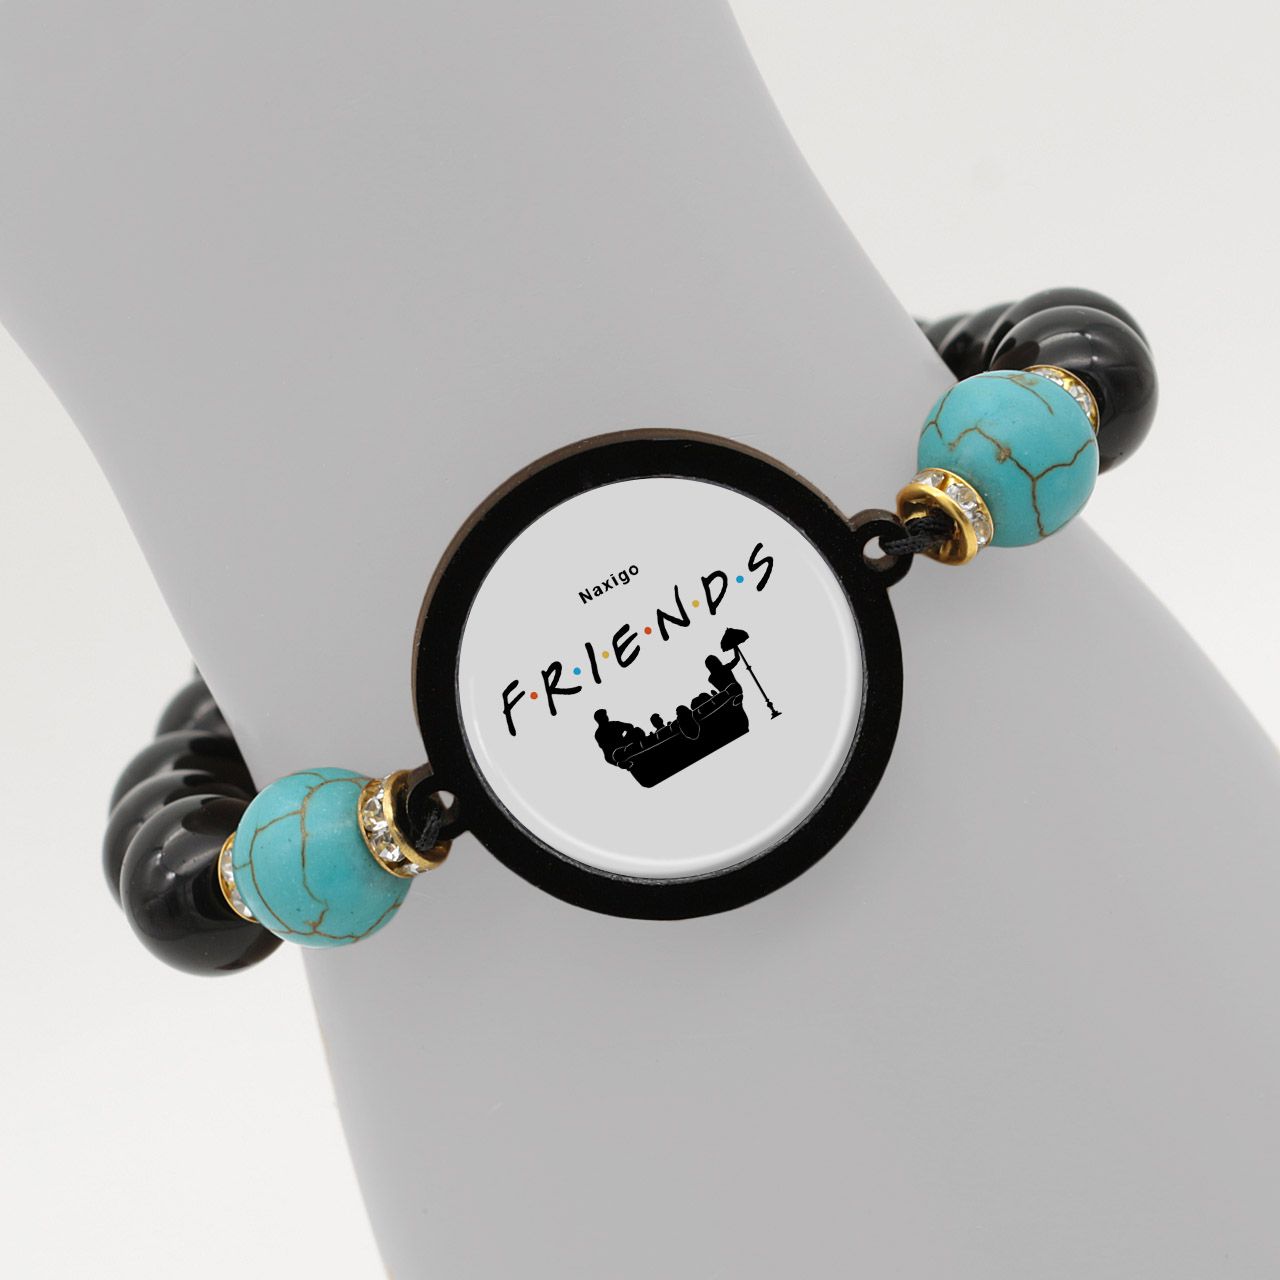 دستبند زنانه ناکسیگو طرح Friends کد BR4300 -  - 6